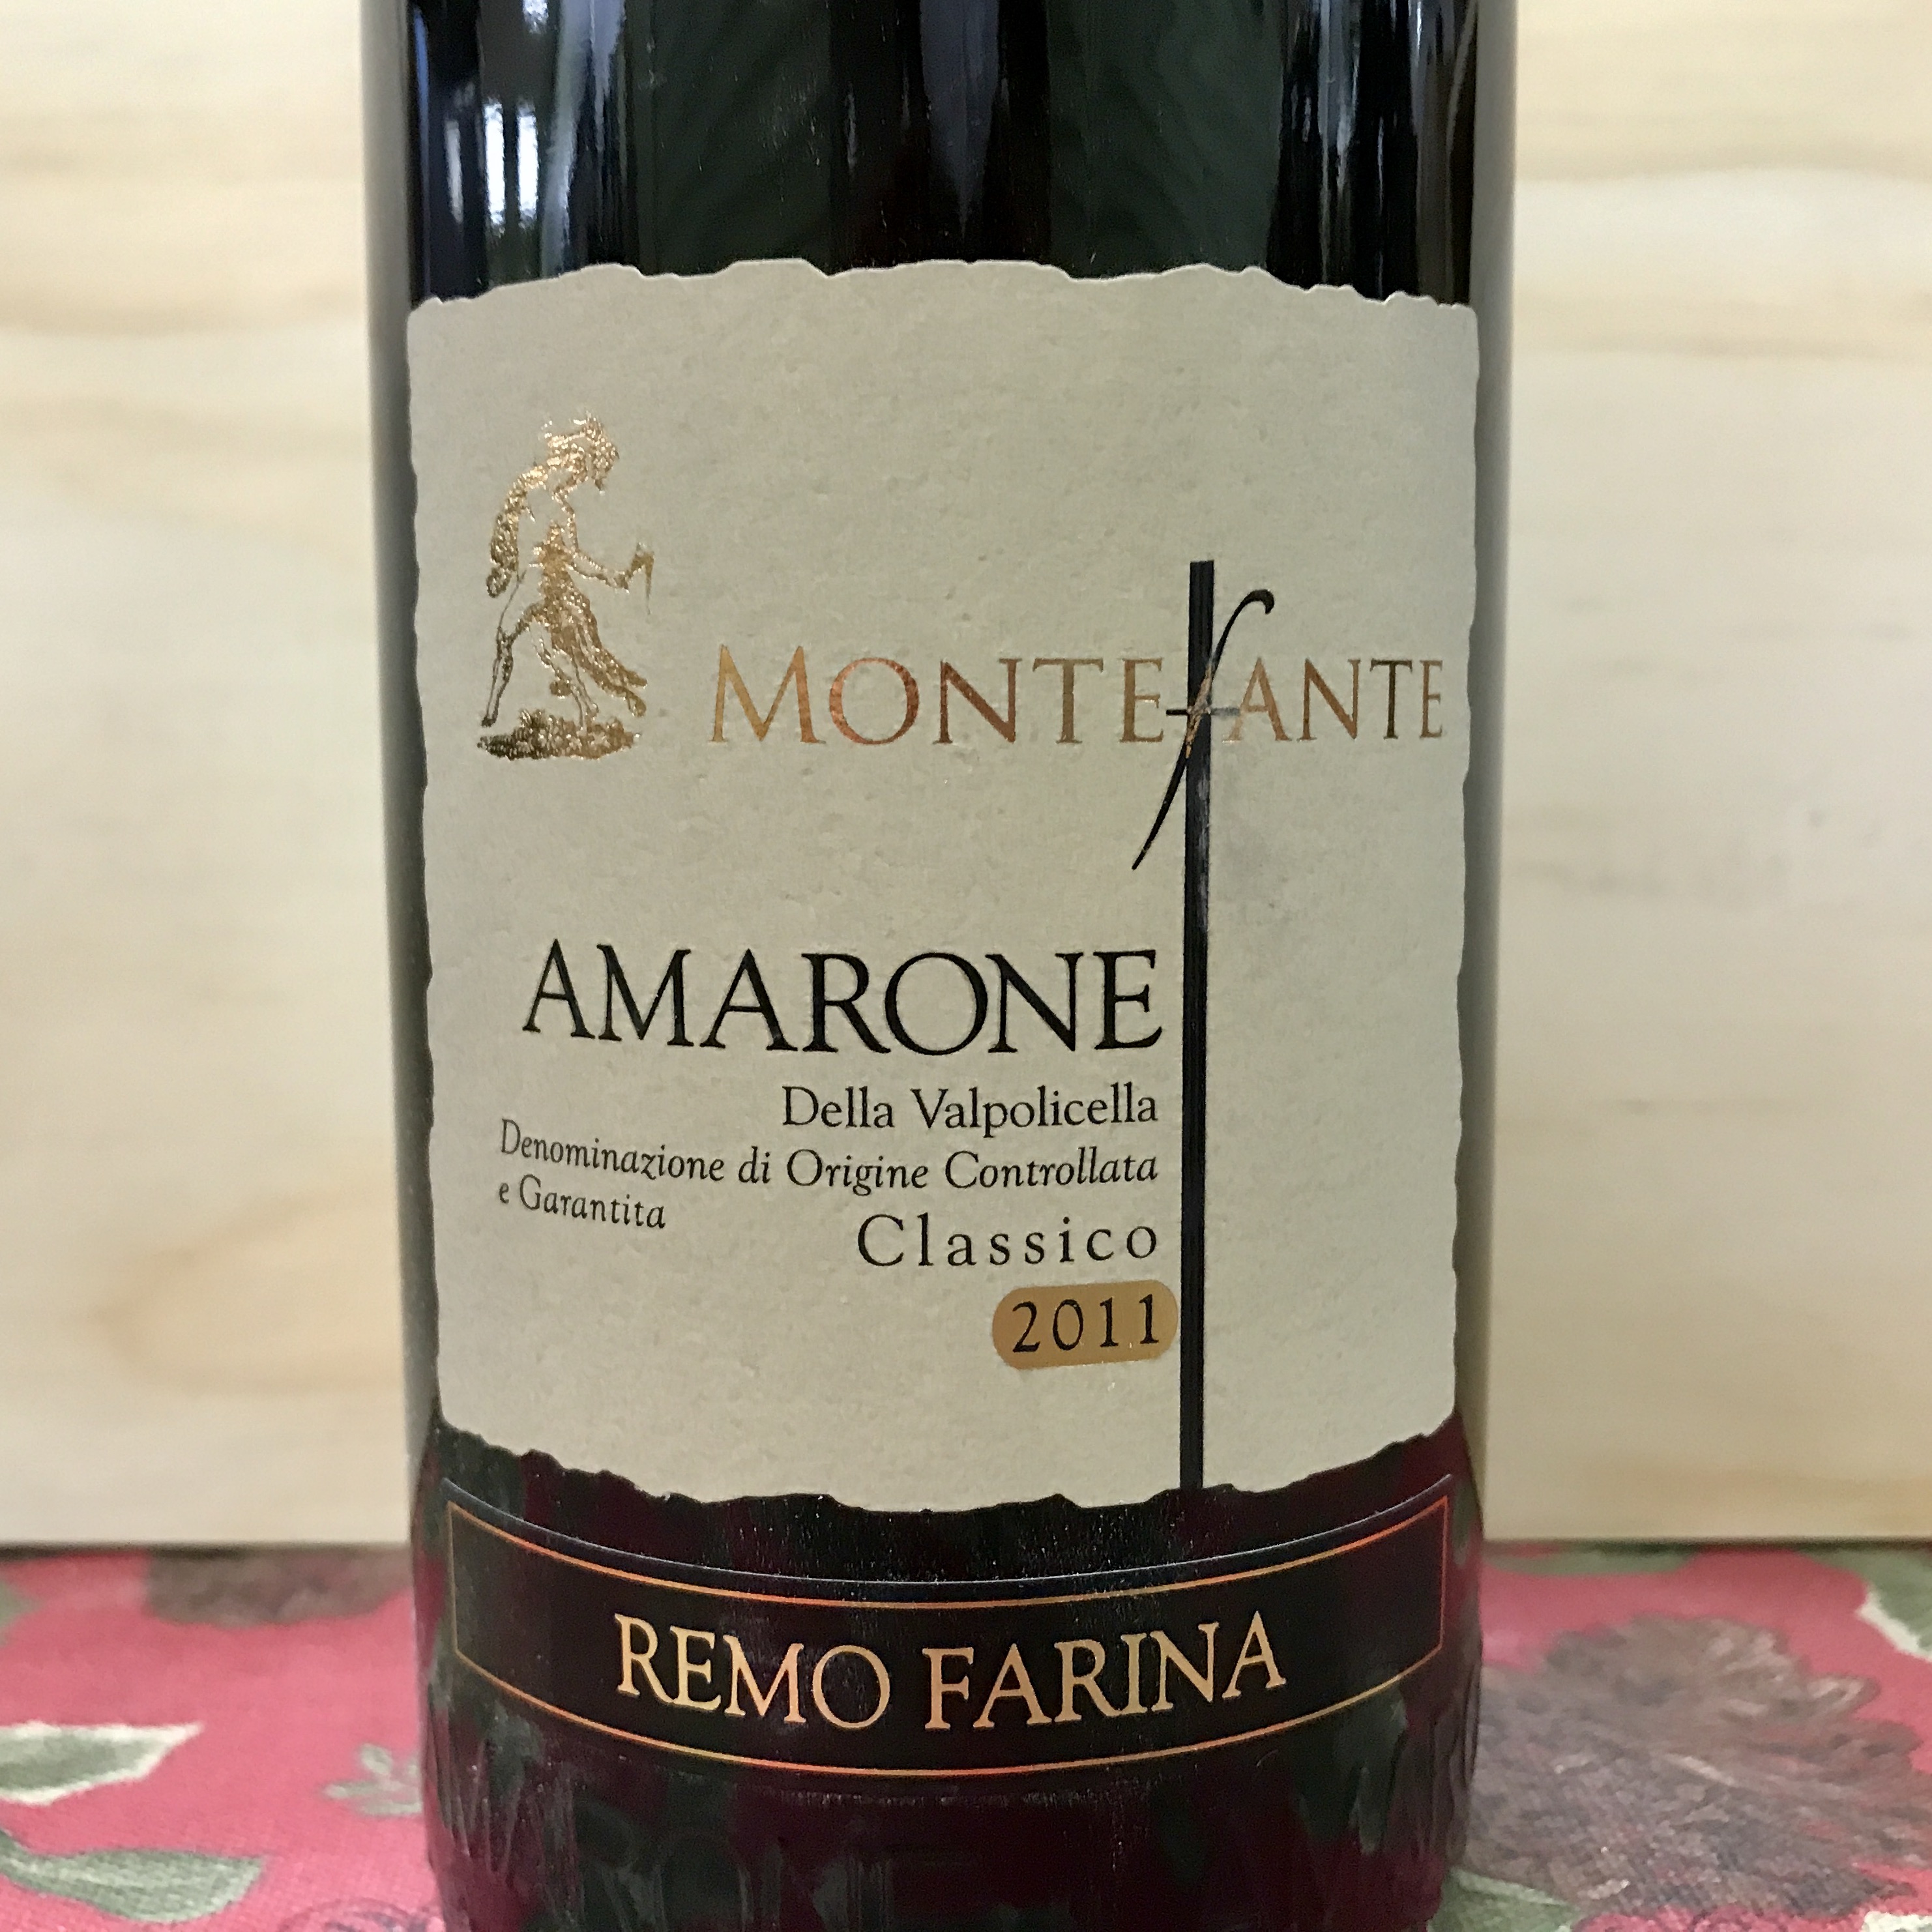 Remo Farina Monte-Ante Amarone Classico 2011